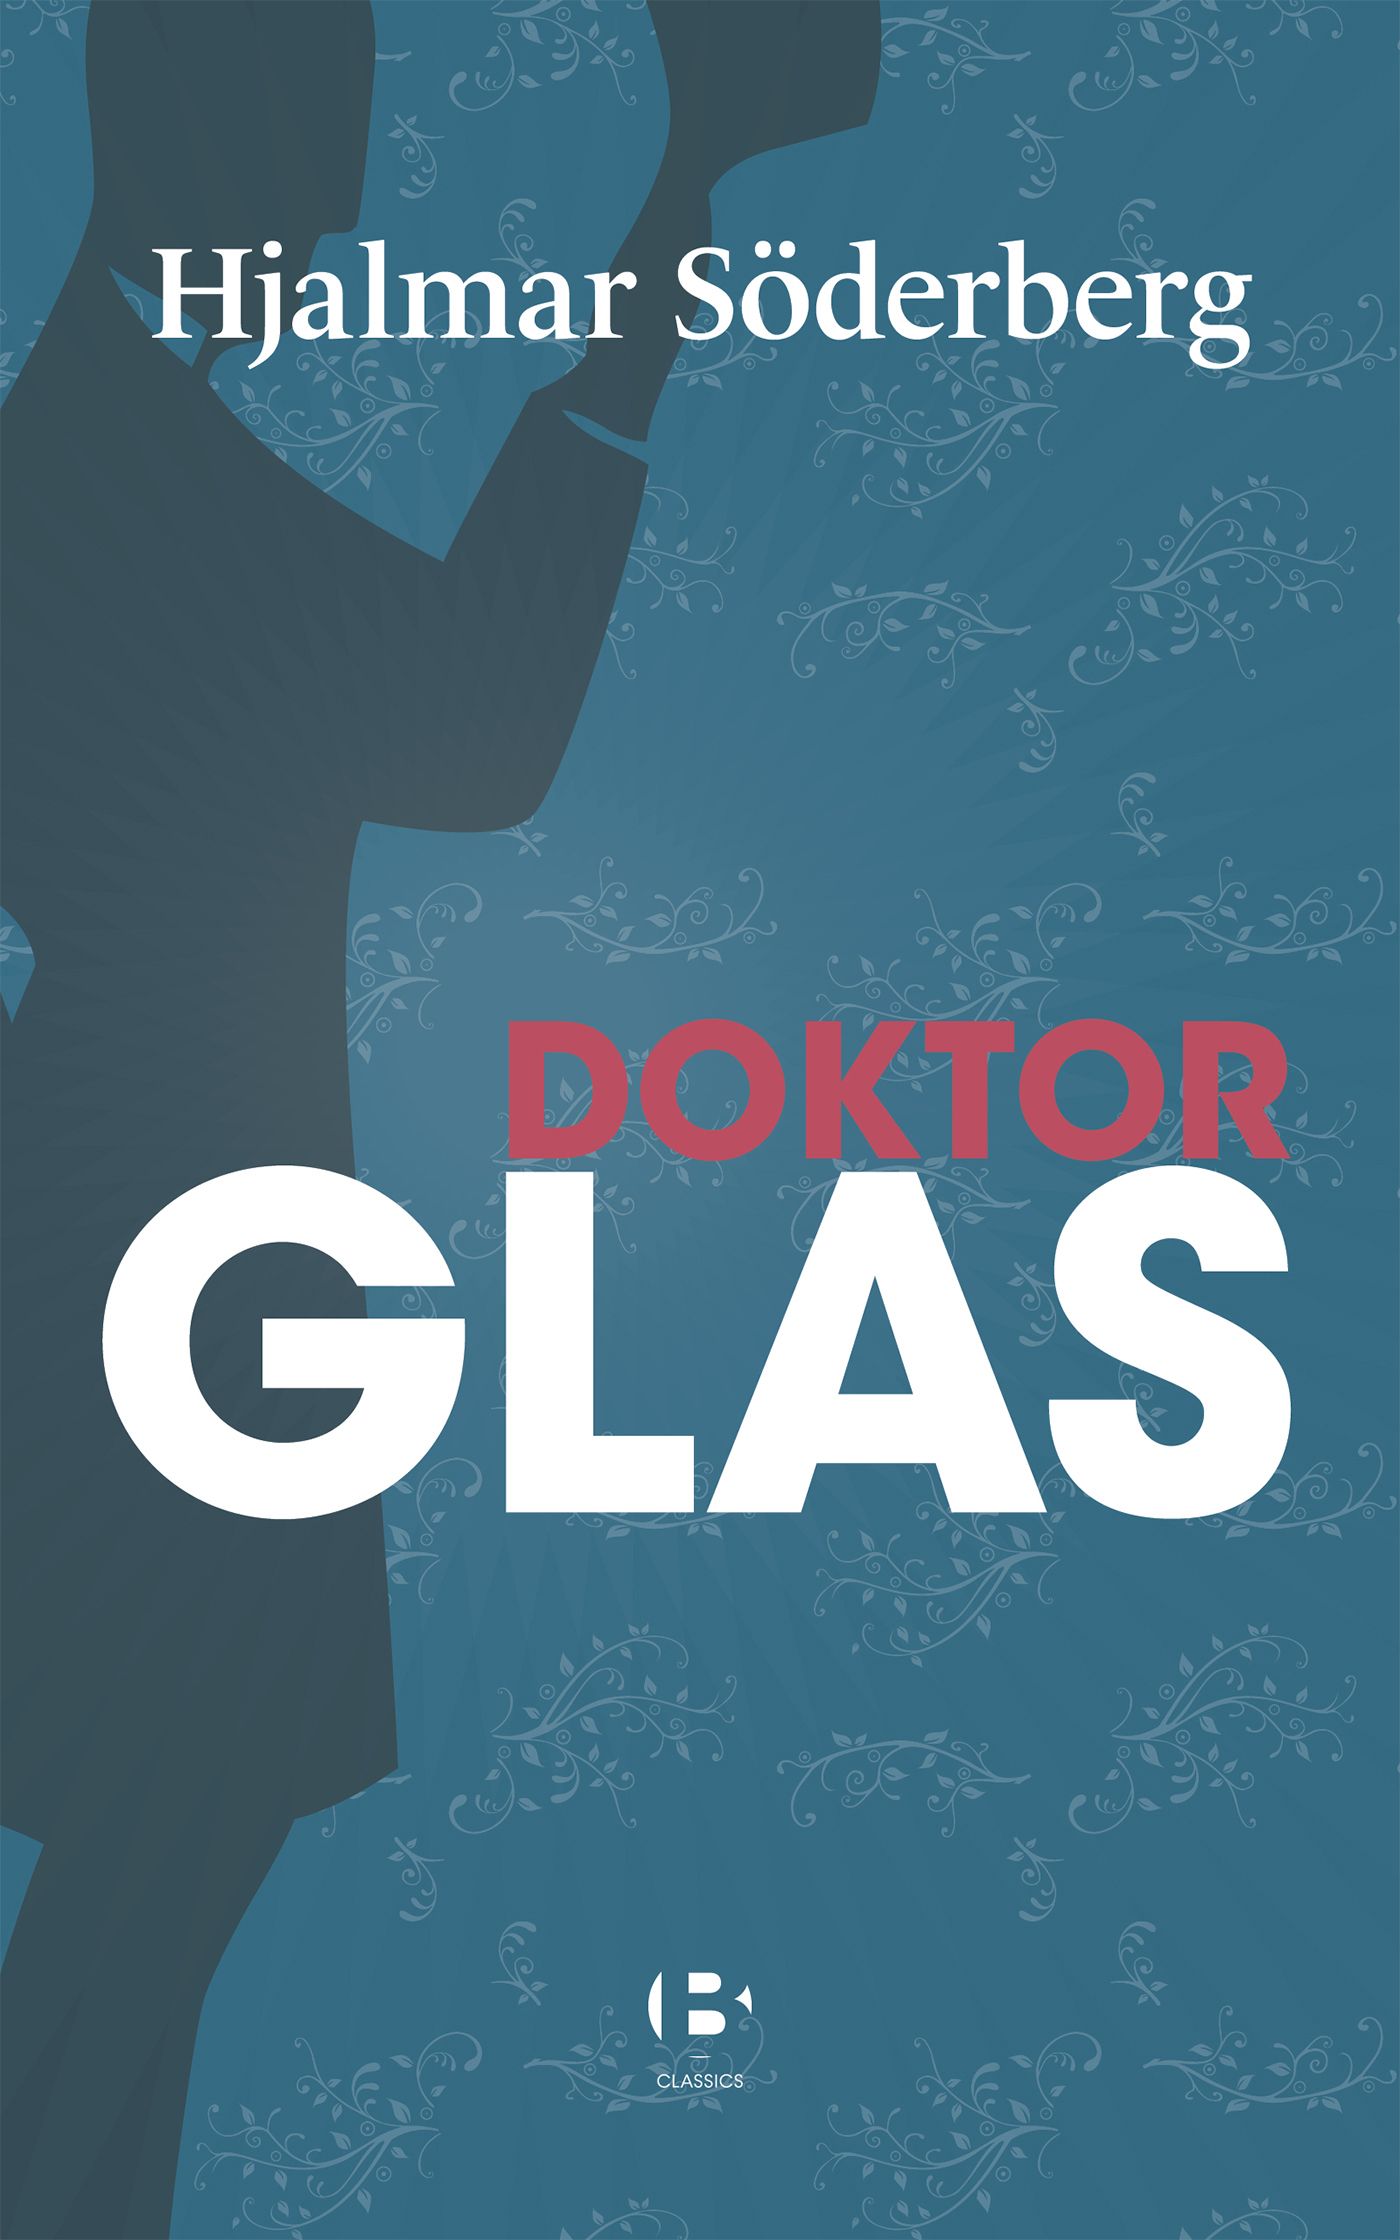 Doktor Glas, eBook by Hjalmar Söderberg